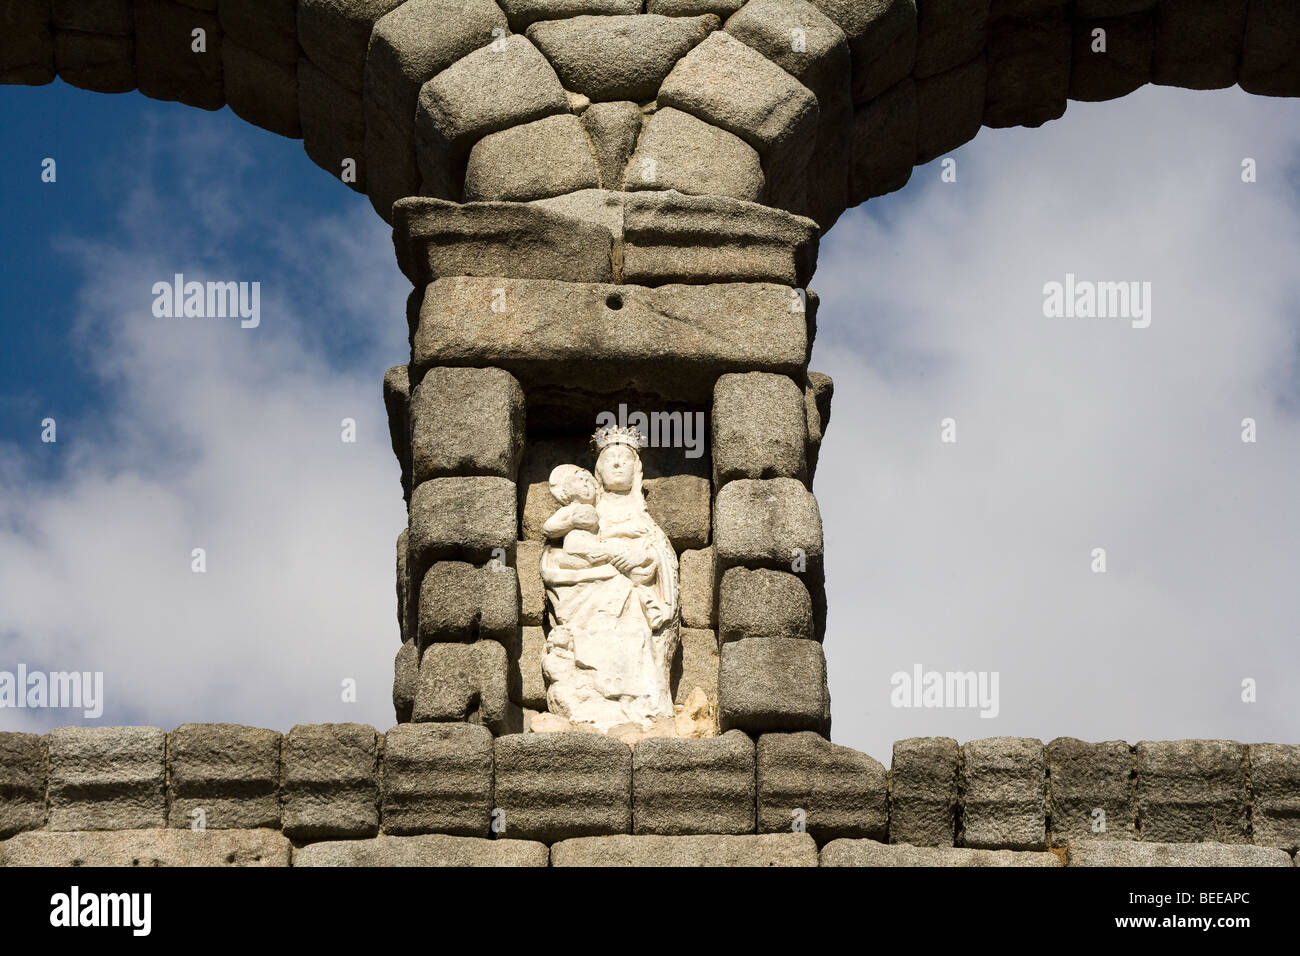 Statue de Vierge Marie et l'enfant Jésus sur l'eau, l'Aqueduc Romain détail, Segovia, Espagne Banque D'Images